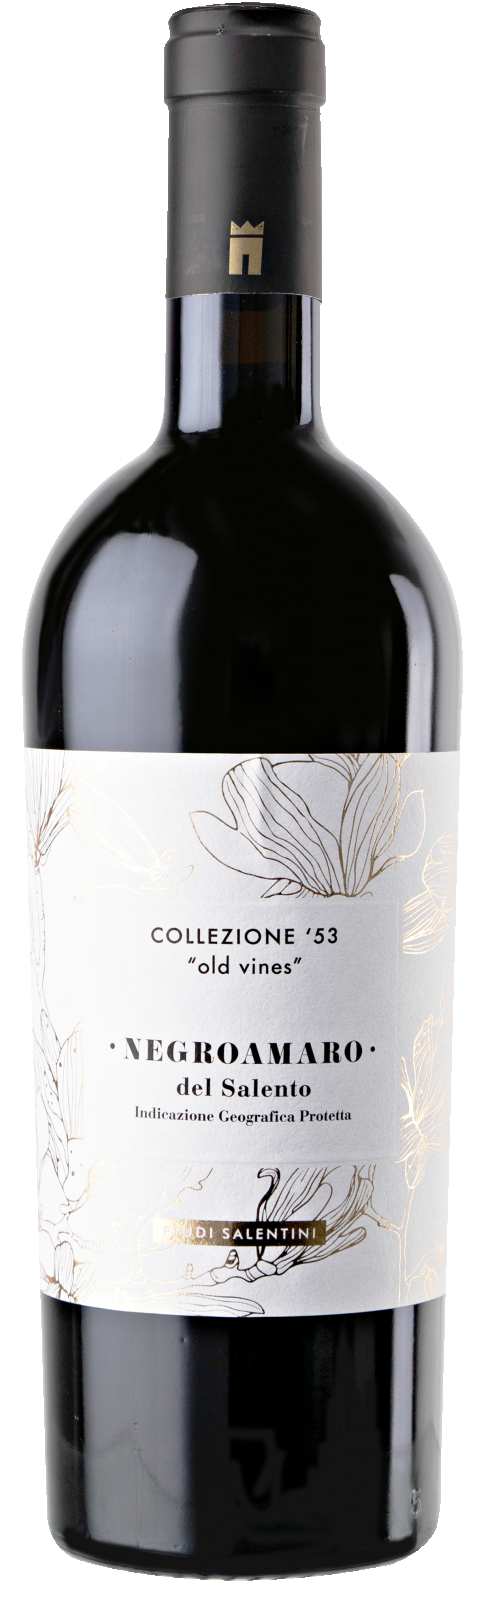 Productfoto Feudi Salentini Collezione '53 Negroamaro del Salento 'Old Vines'